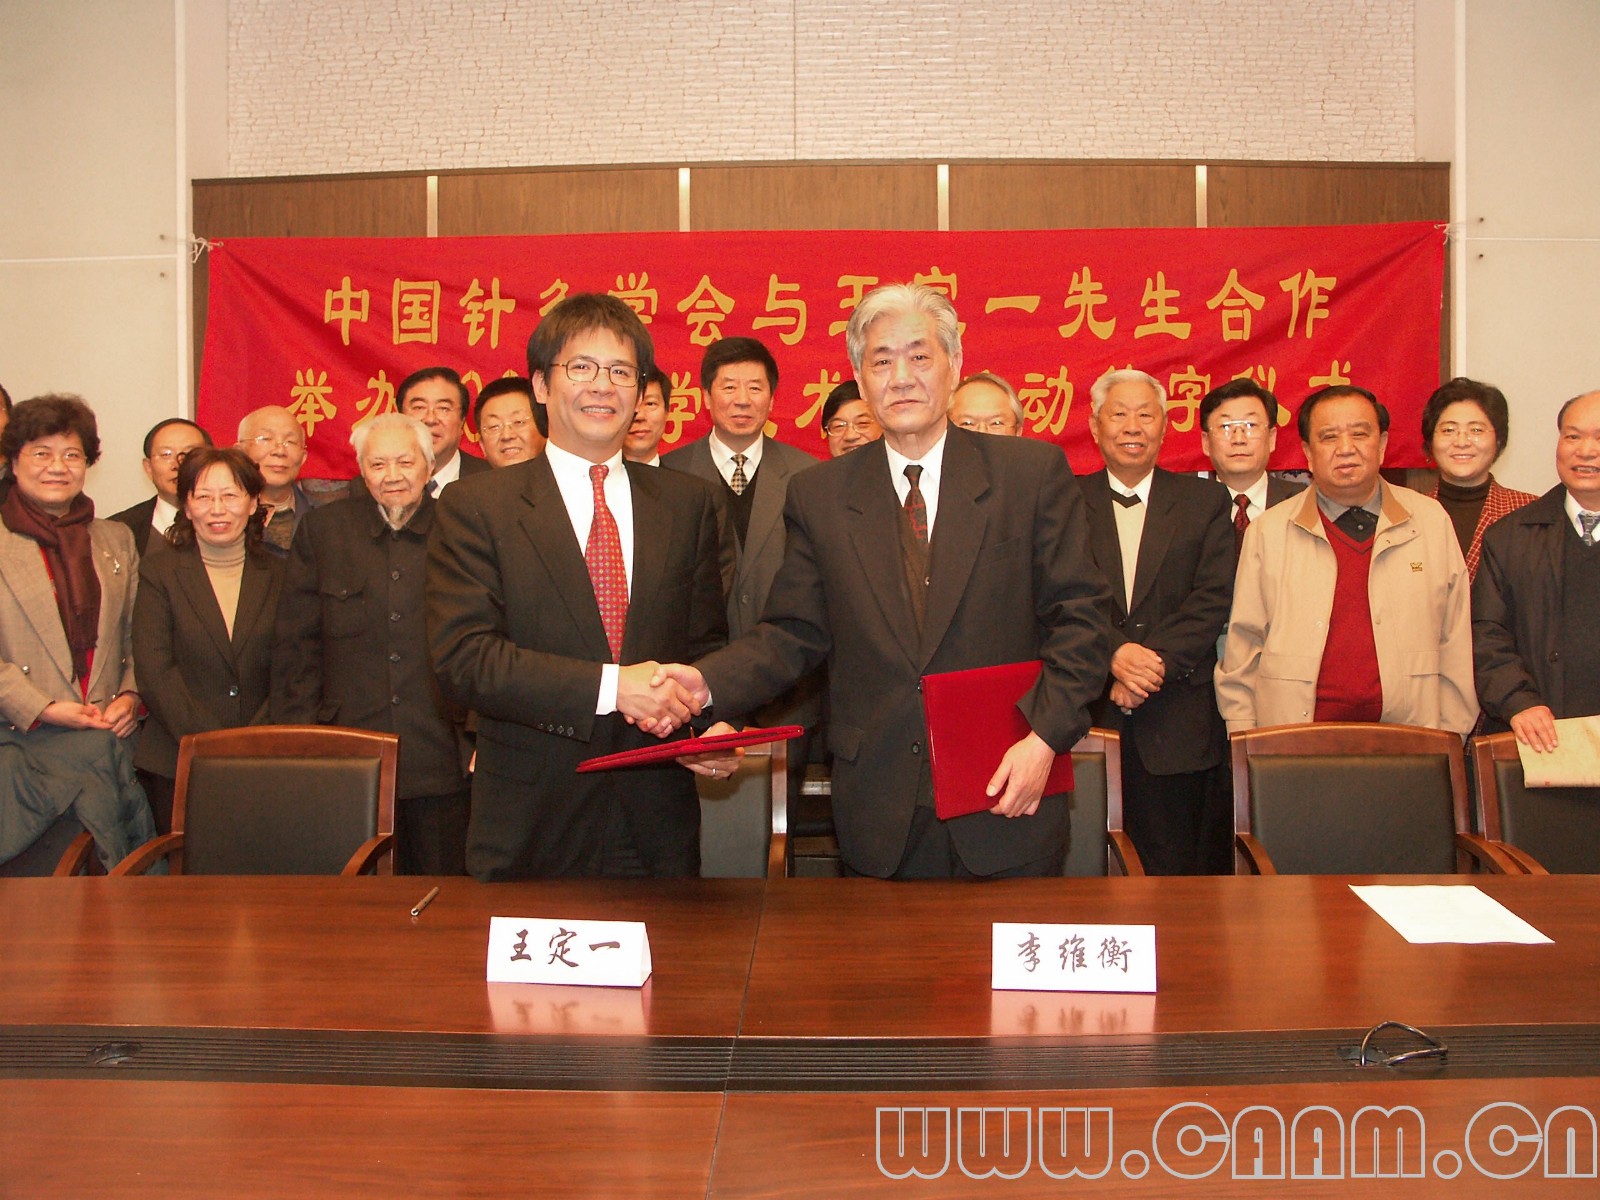 中国针灸学会与王定一先生合作举办2006科学技术奖活动签字仪式.jpg